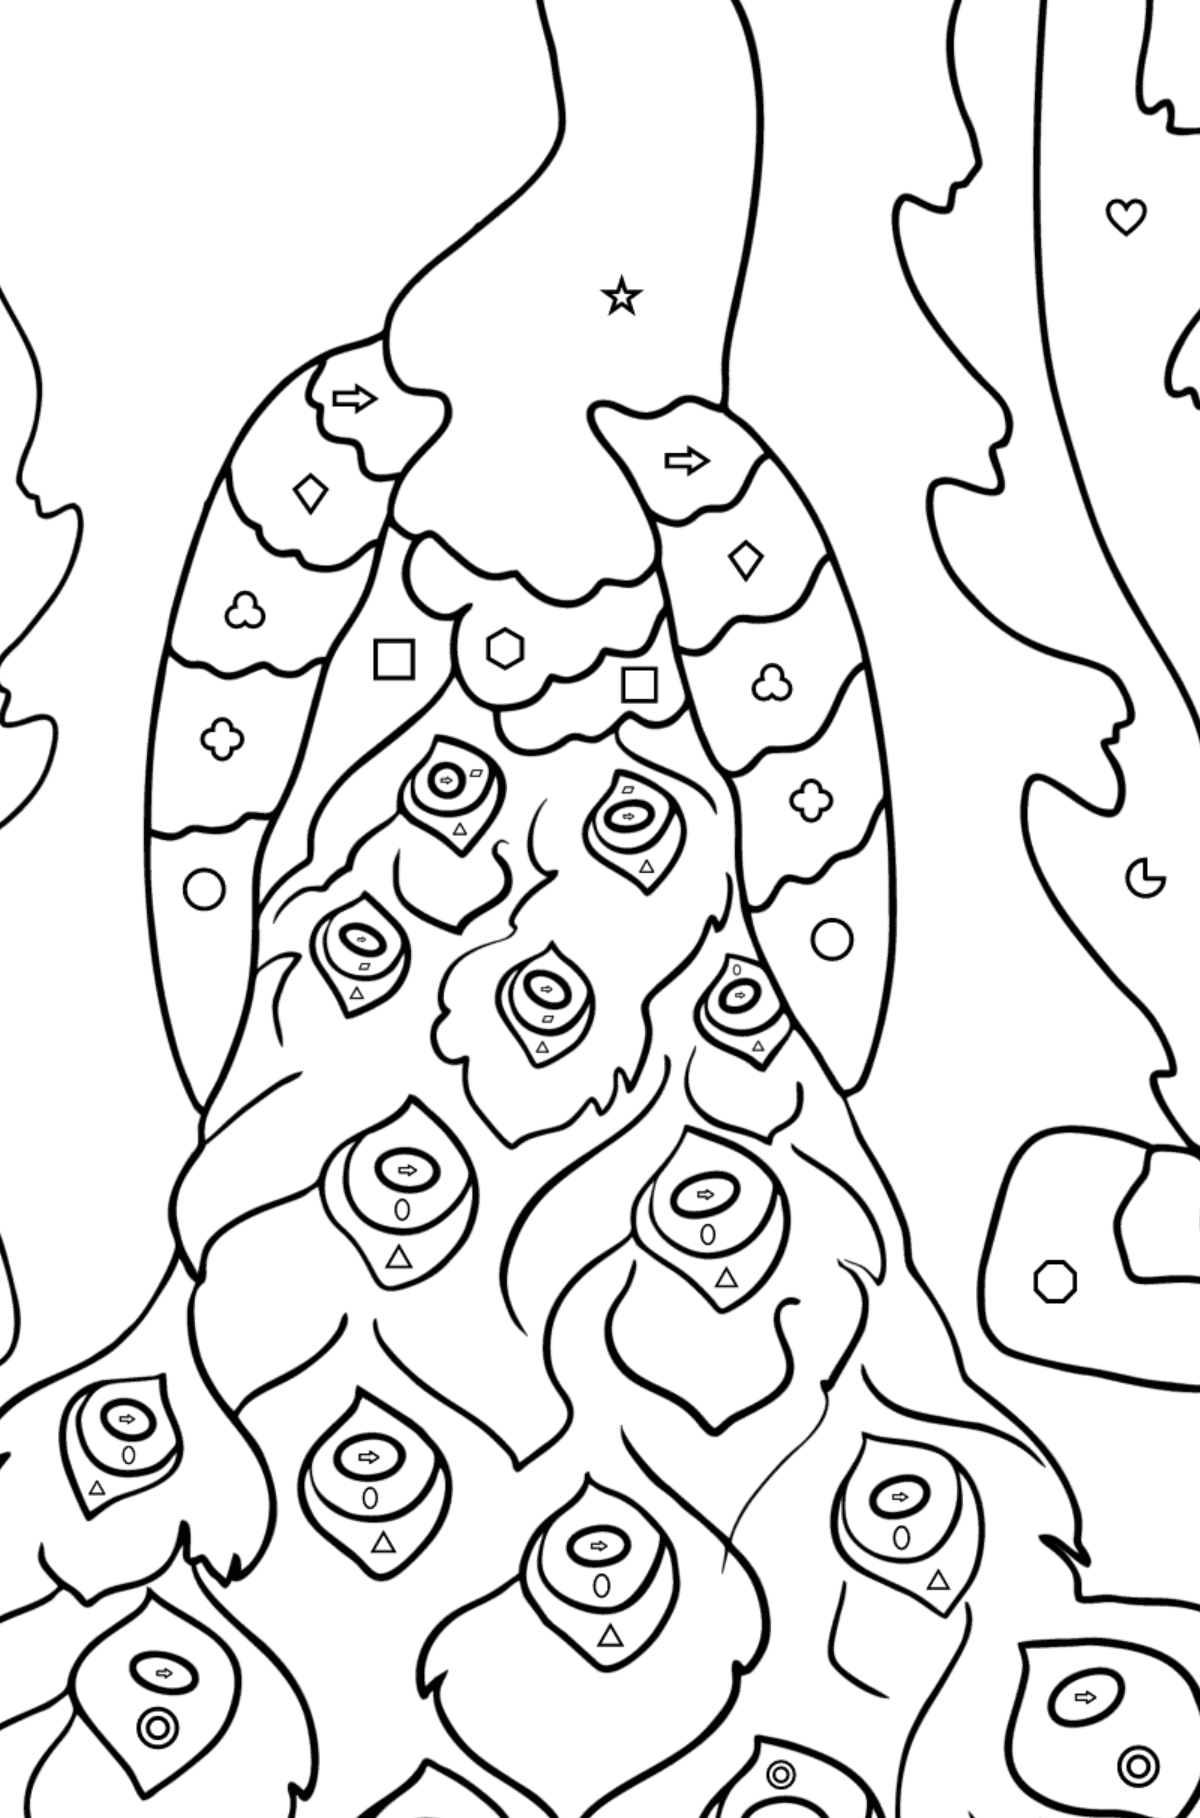 Kleurplaat pauw (moeilijk) - Kleuren met geometrische figuren voor kinderen